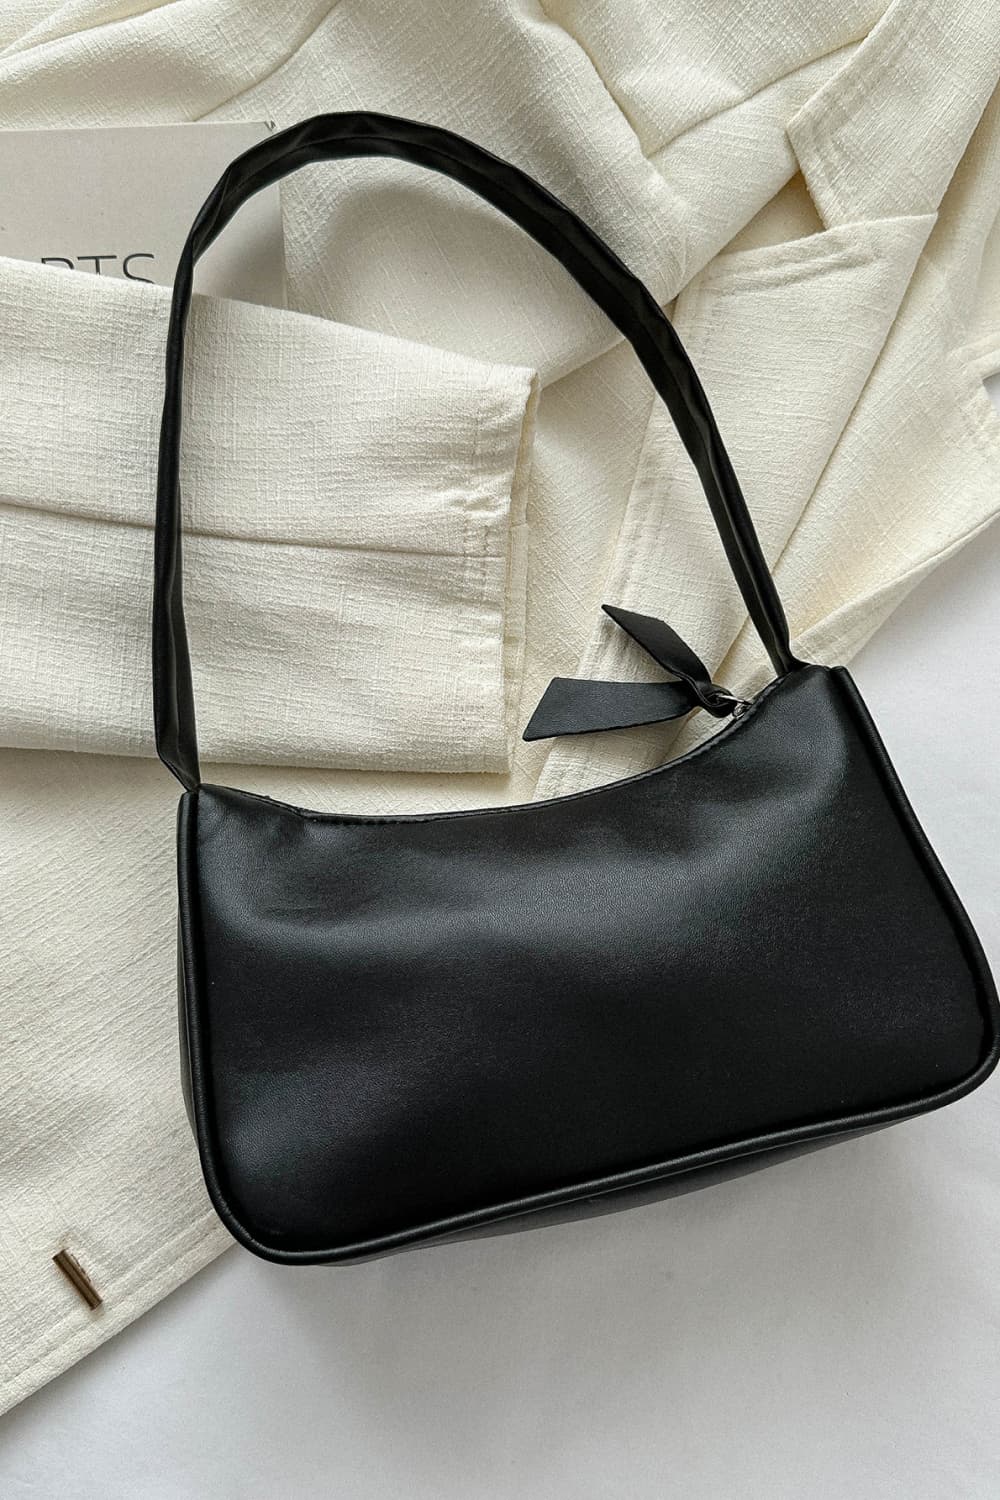 PU Leather Shoulder Bag - GemThreads Boutique